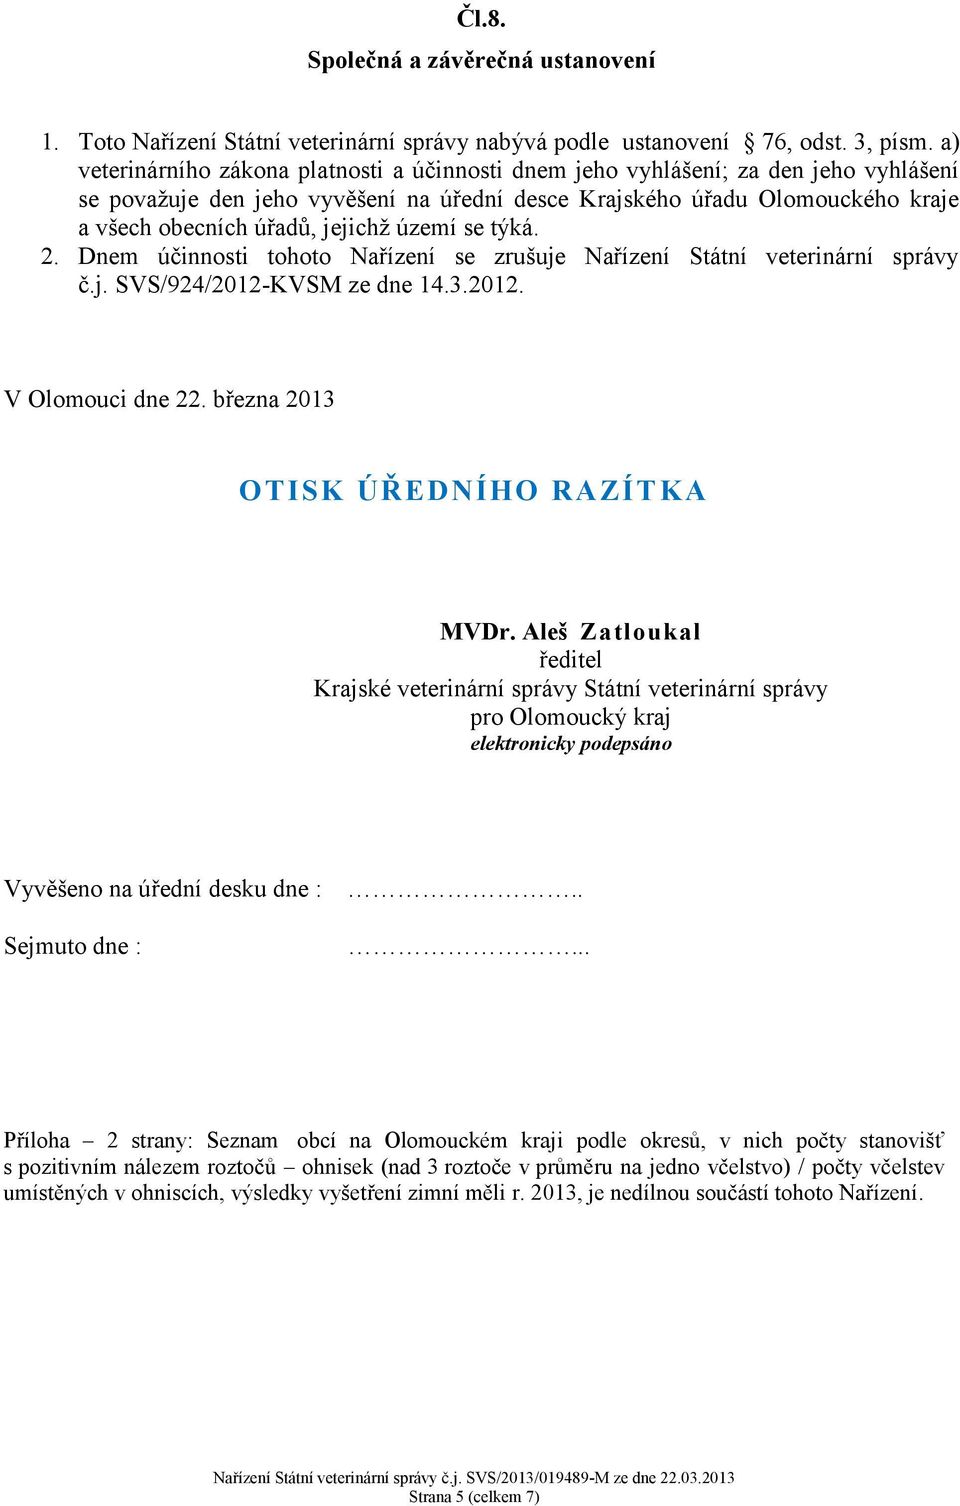 jejichž území se týká. 2. Dnem účinnosti tohoto Nařízení se zrušuje Nařízení Státní veterinární správy č.j. SVS/924/2012-KVSM ze dne 14.3.2012. V Olomouci dne 22.